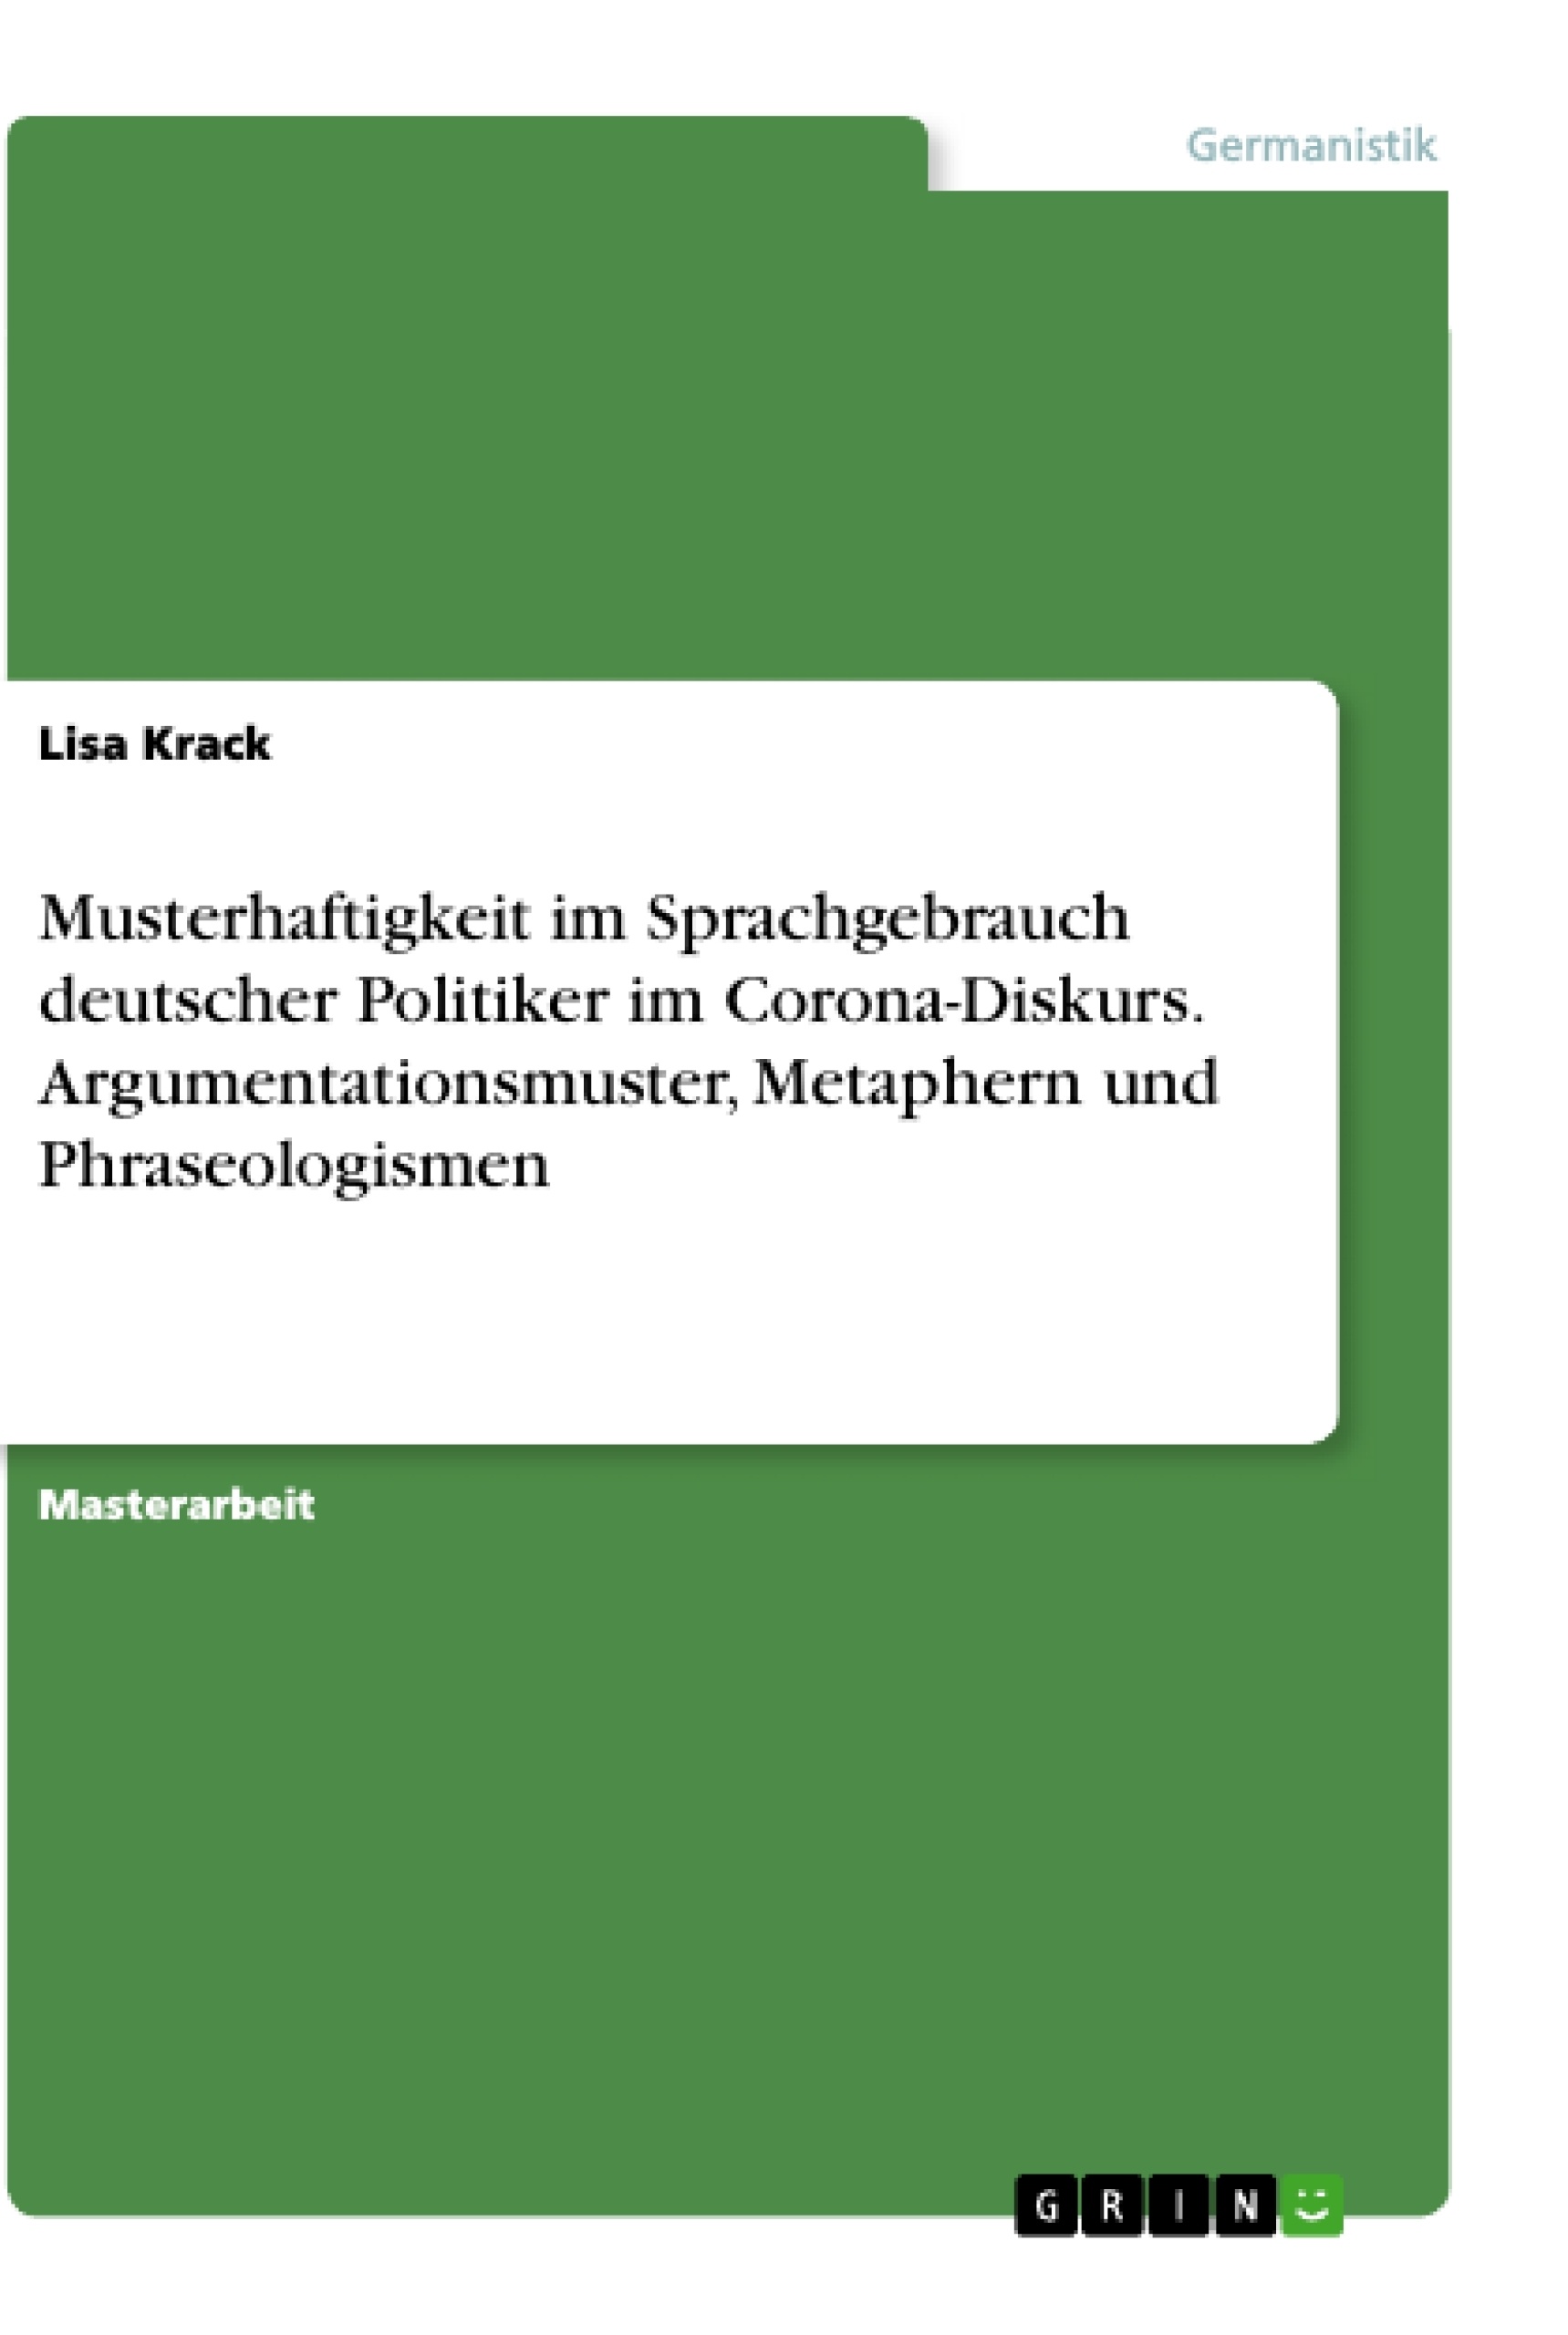 Title: Musterhaftigkeit im Sprachgebrauch deutscher Politiker im Corona-Diskurs. Argumentationsmuster, Metaphern und Phraseologismen